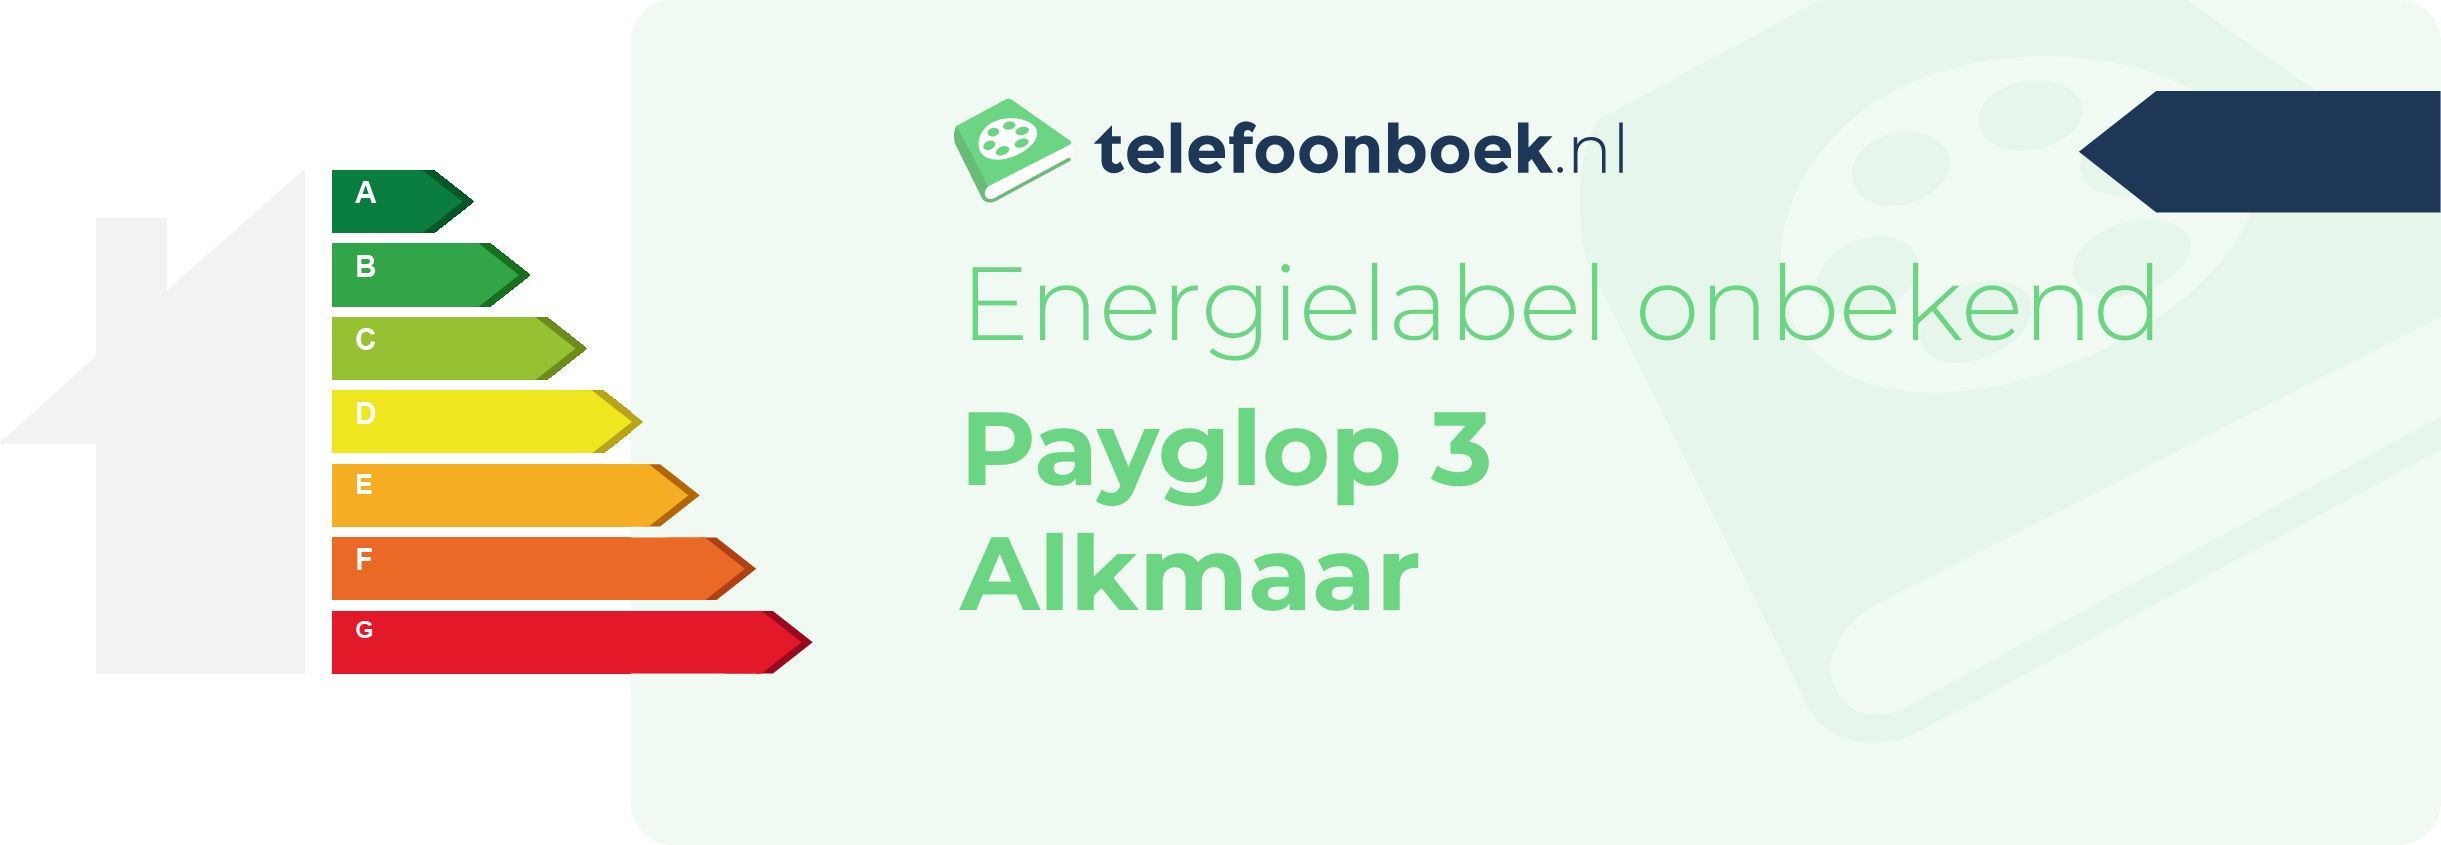 Energielabel Payglop 3 Alkmaar